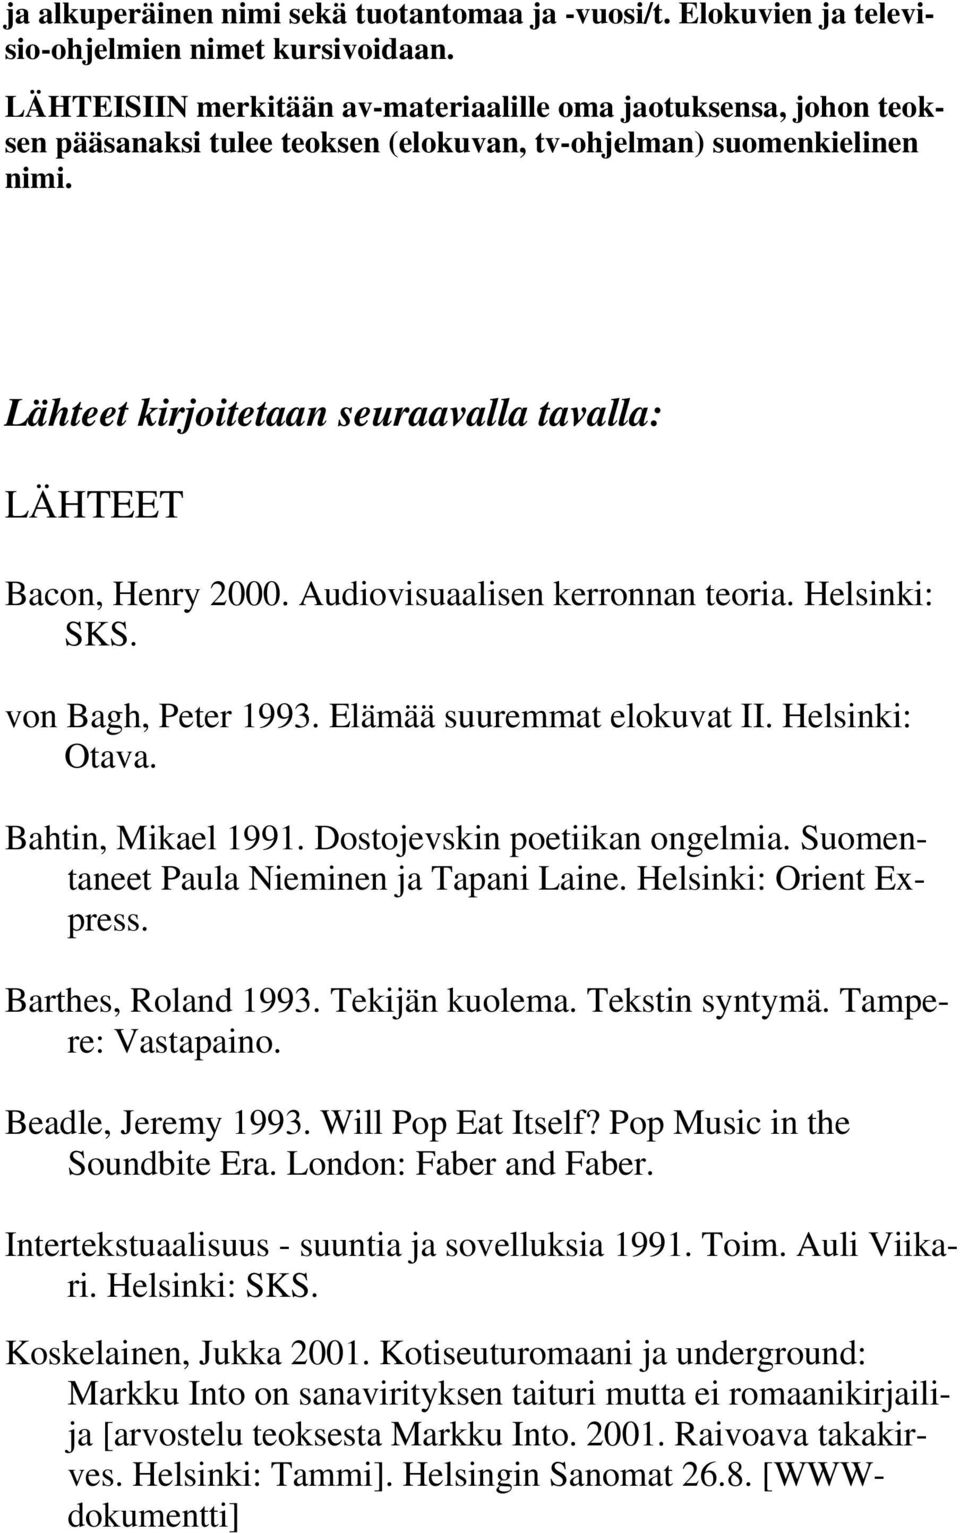 Lähteet kirjoitetaan seuraavalla tavalla: LÄHTEET Bacon, Henry 2000. Audiovisuaalisen kerronnan teoria. Helsinki: SKS. von Bagh, Peter 1993. Elämää suuremmat elokuvat II. Helsinki: Otava.